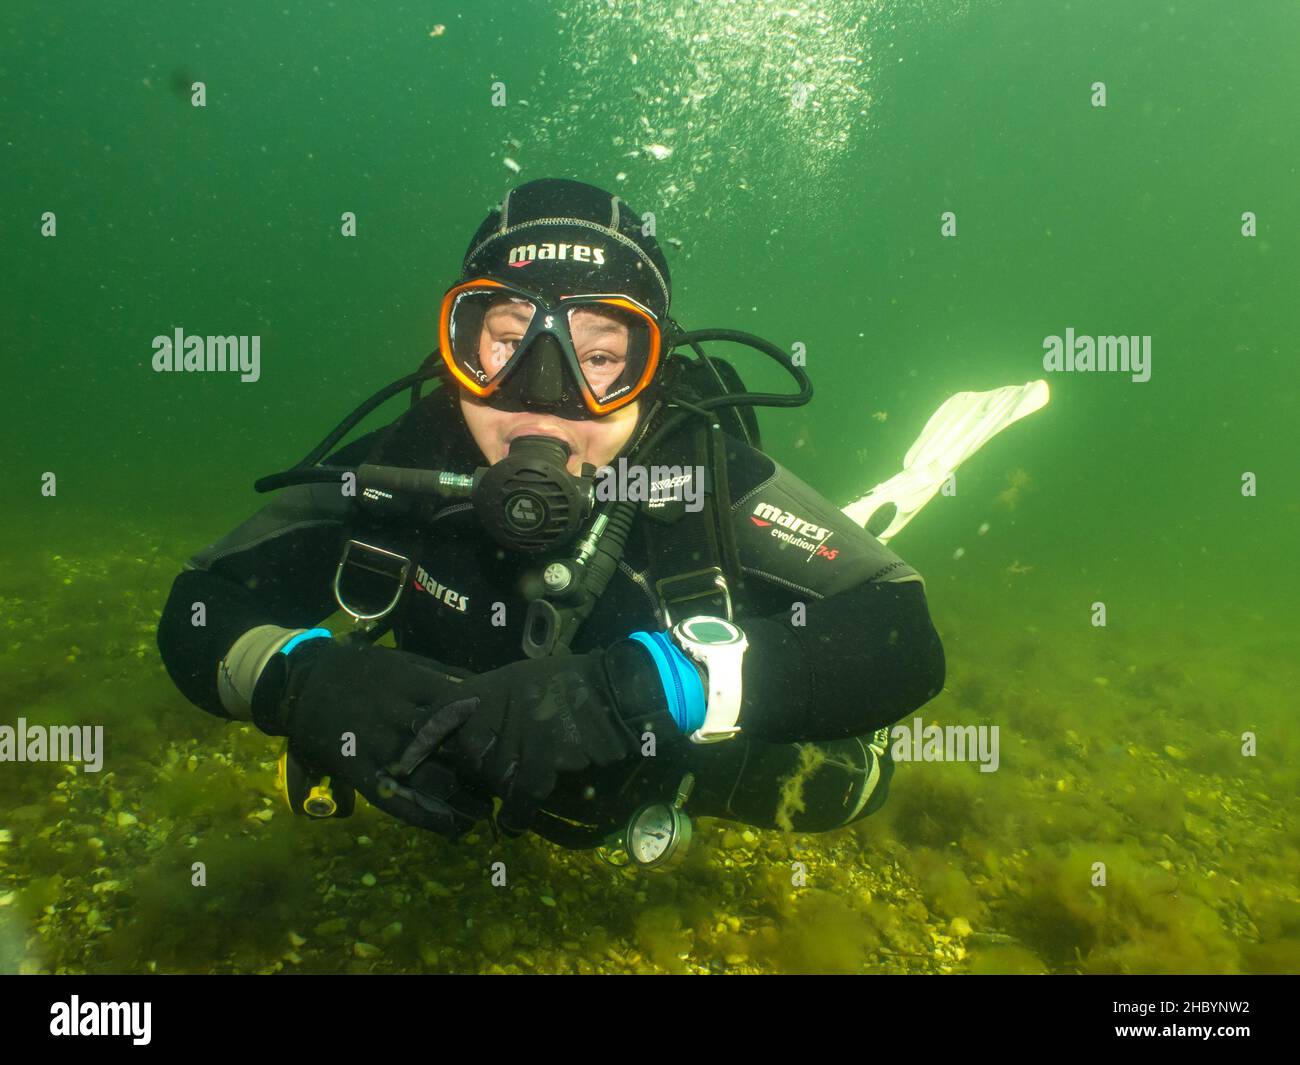 5 septembre 2021 - Malmo, Suède: Une femelle plongée sous-marine éclairée par les rayons du soleil pénétrant dans l'eau. La plongée sous-marine a été un sport de plus en plus populaire pendant la pandémie du coronavirus Banque D'Images